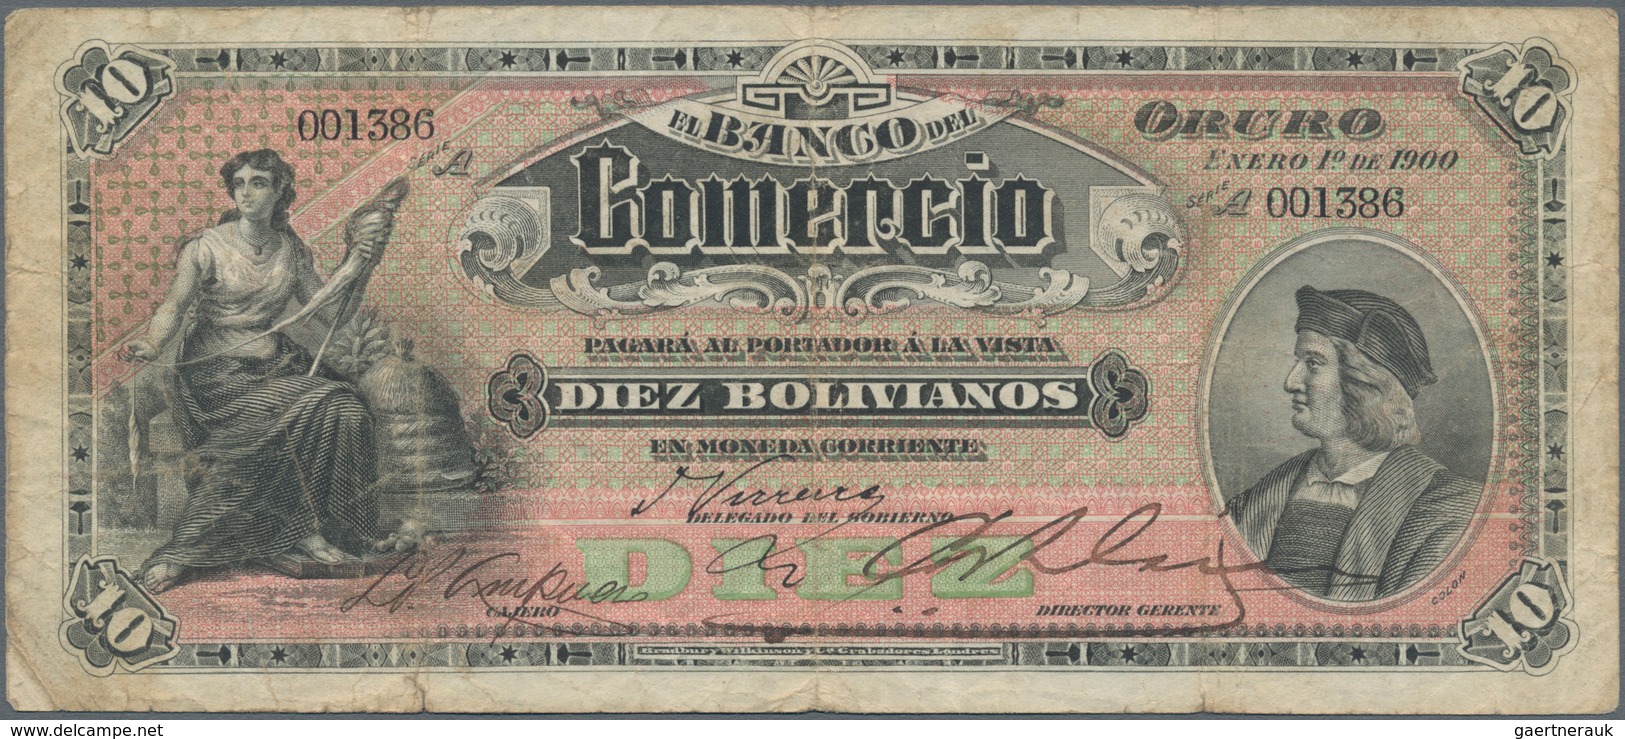 Bolivia / Bolivien: El Banco Del Comercio 10 Bolivianos 1900, P.S133, Still Nice With Strong Paper, - Bolivien